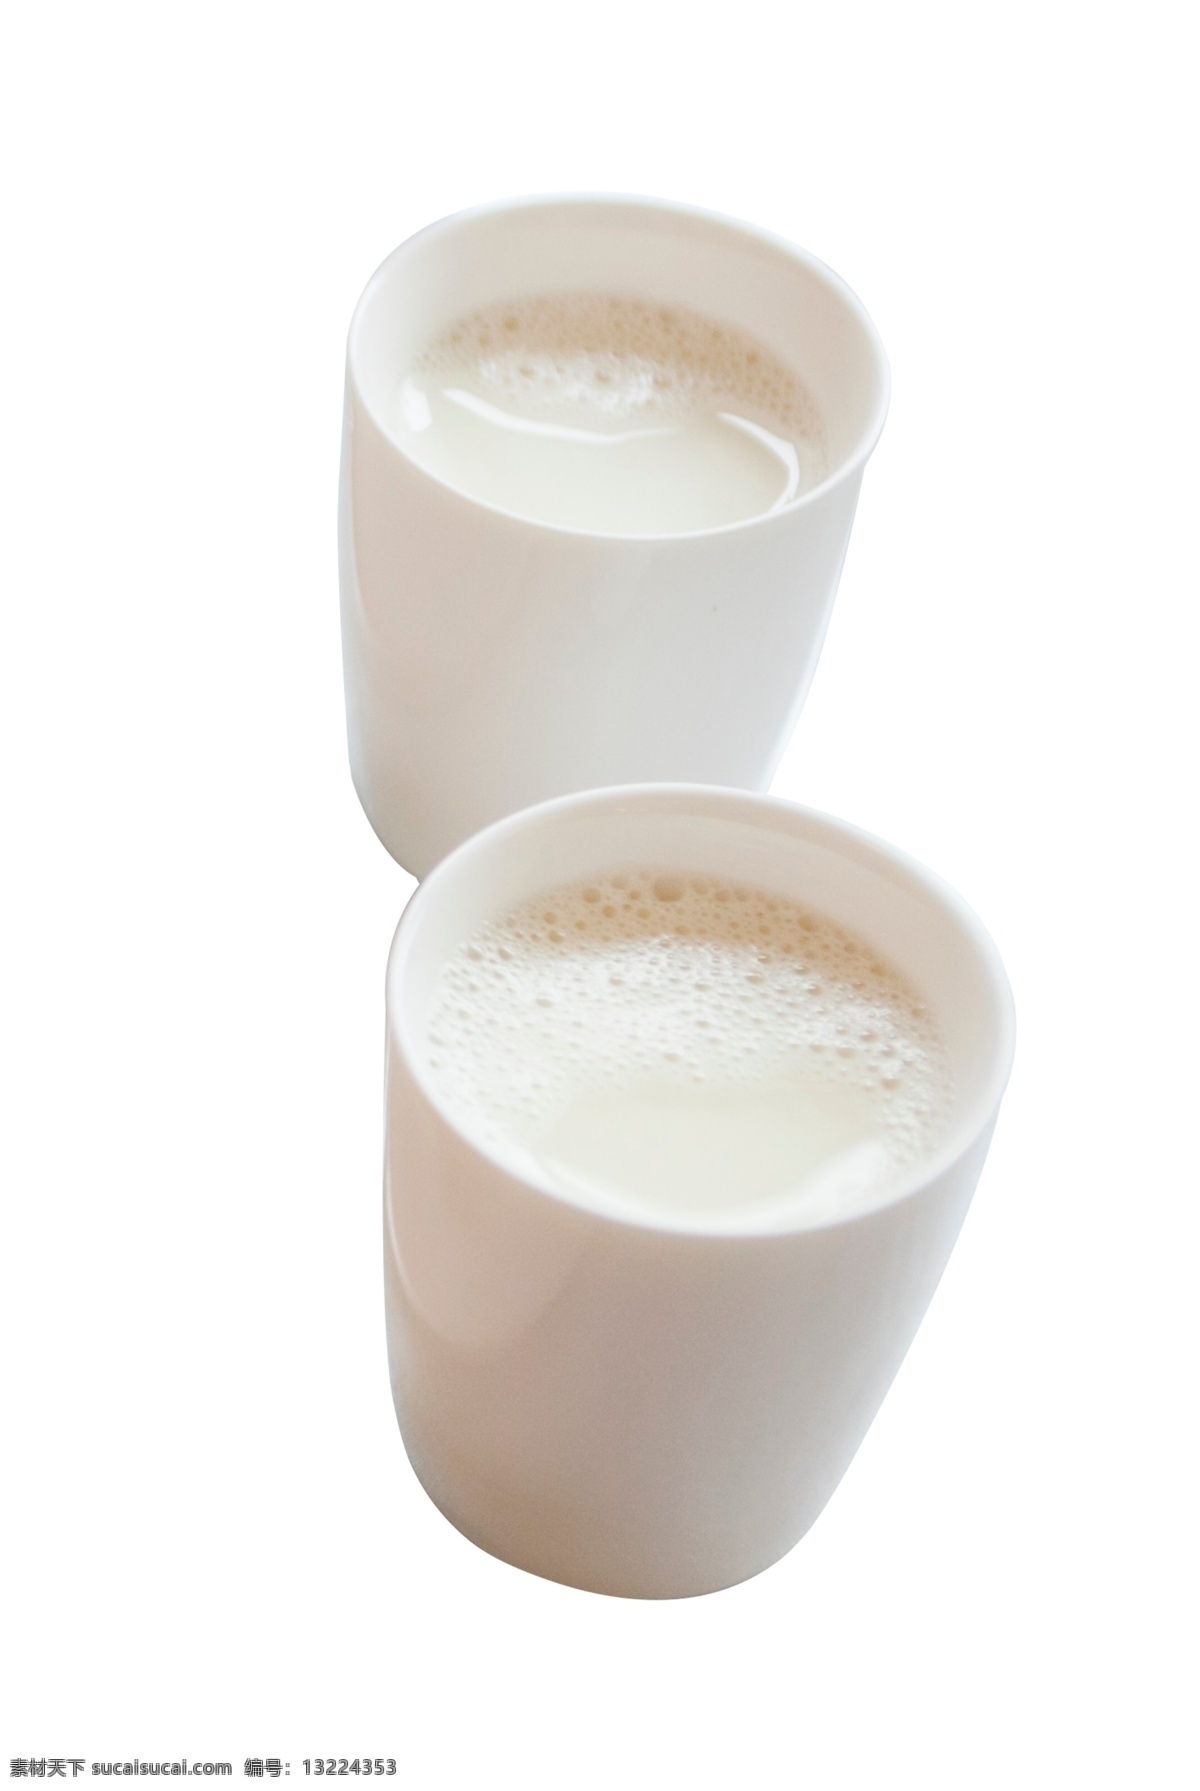 两 杯 牛奶 丰富 早餐 两杯牛奶 乳白色 奶粉 奶制品 饮品 早餐奶 玻璃瓶 营养奶 奶水 新鲜 美味 鲜奶 乳 奶